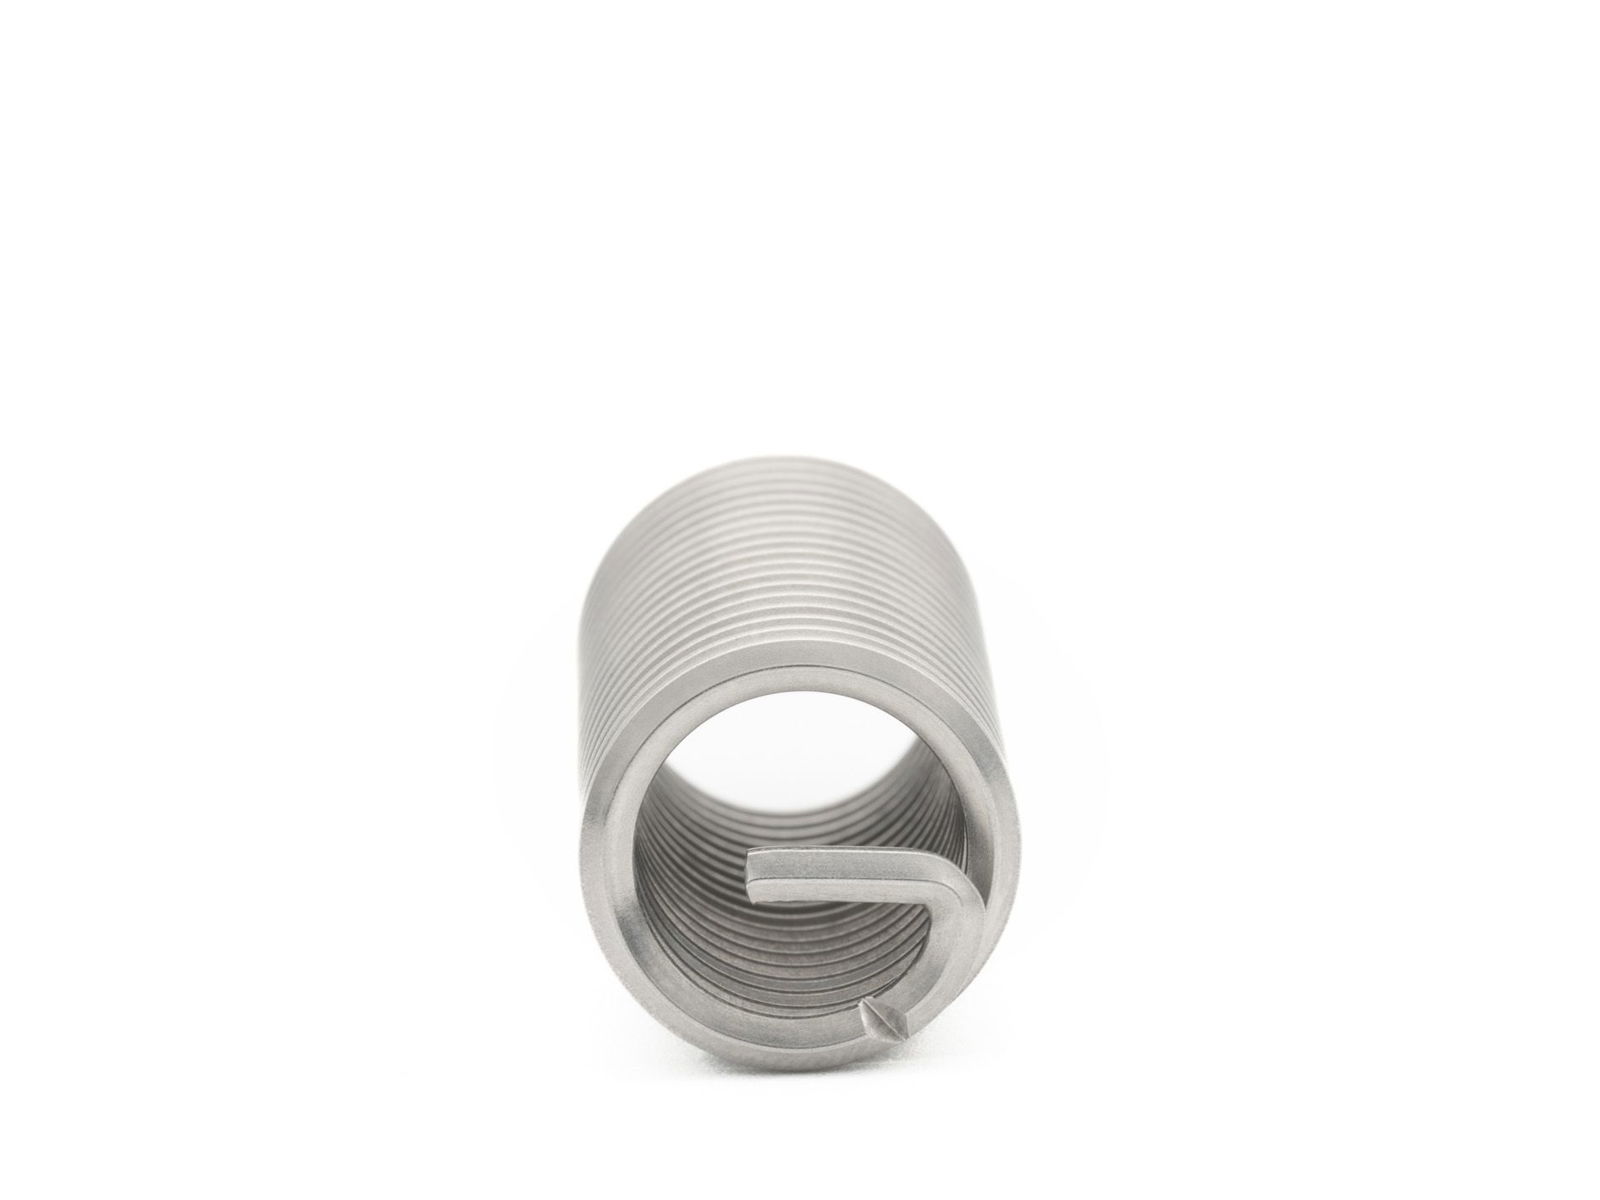 BaerCoil Drahtgewindeeinsätze UNC 1“ x 8 - 3,0 D (76,2 mm) - frei durchlaufend - 10 Stück